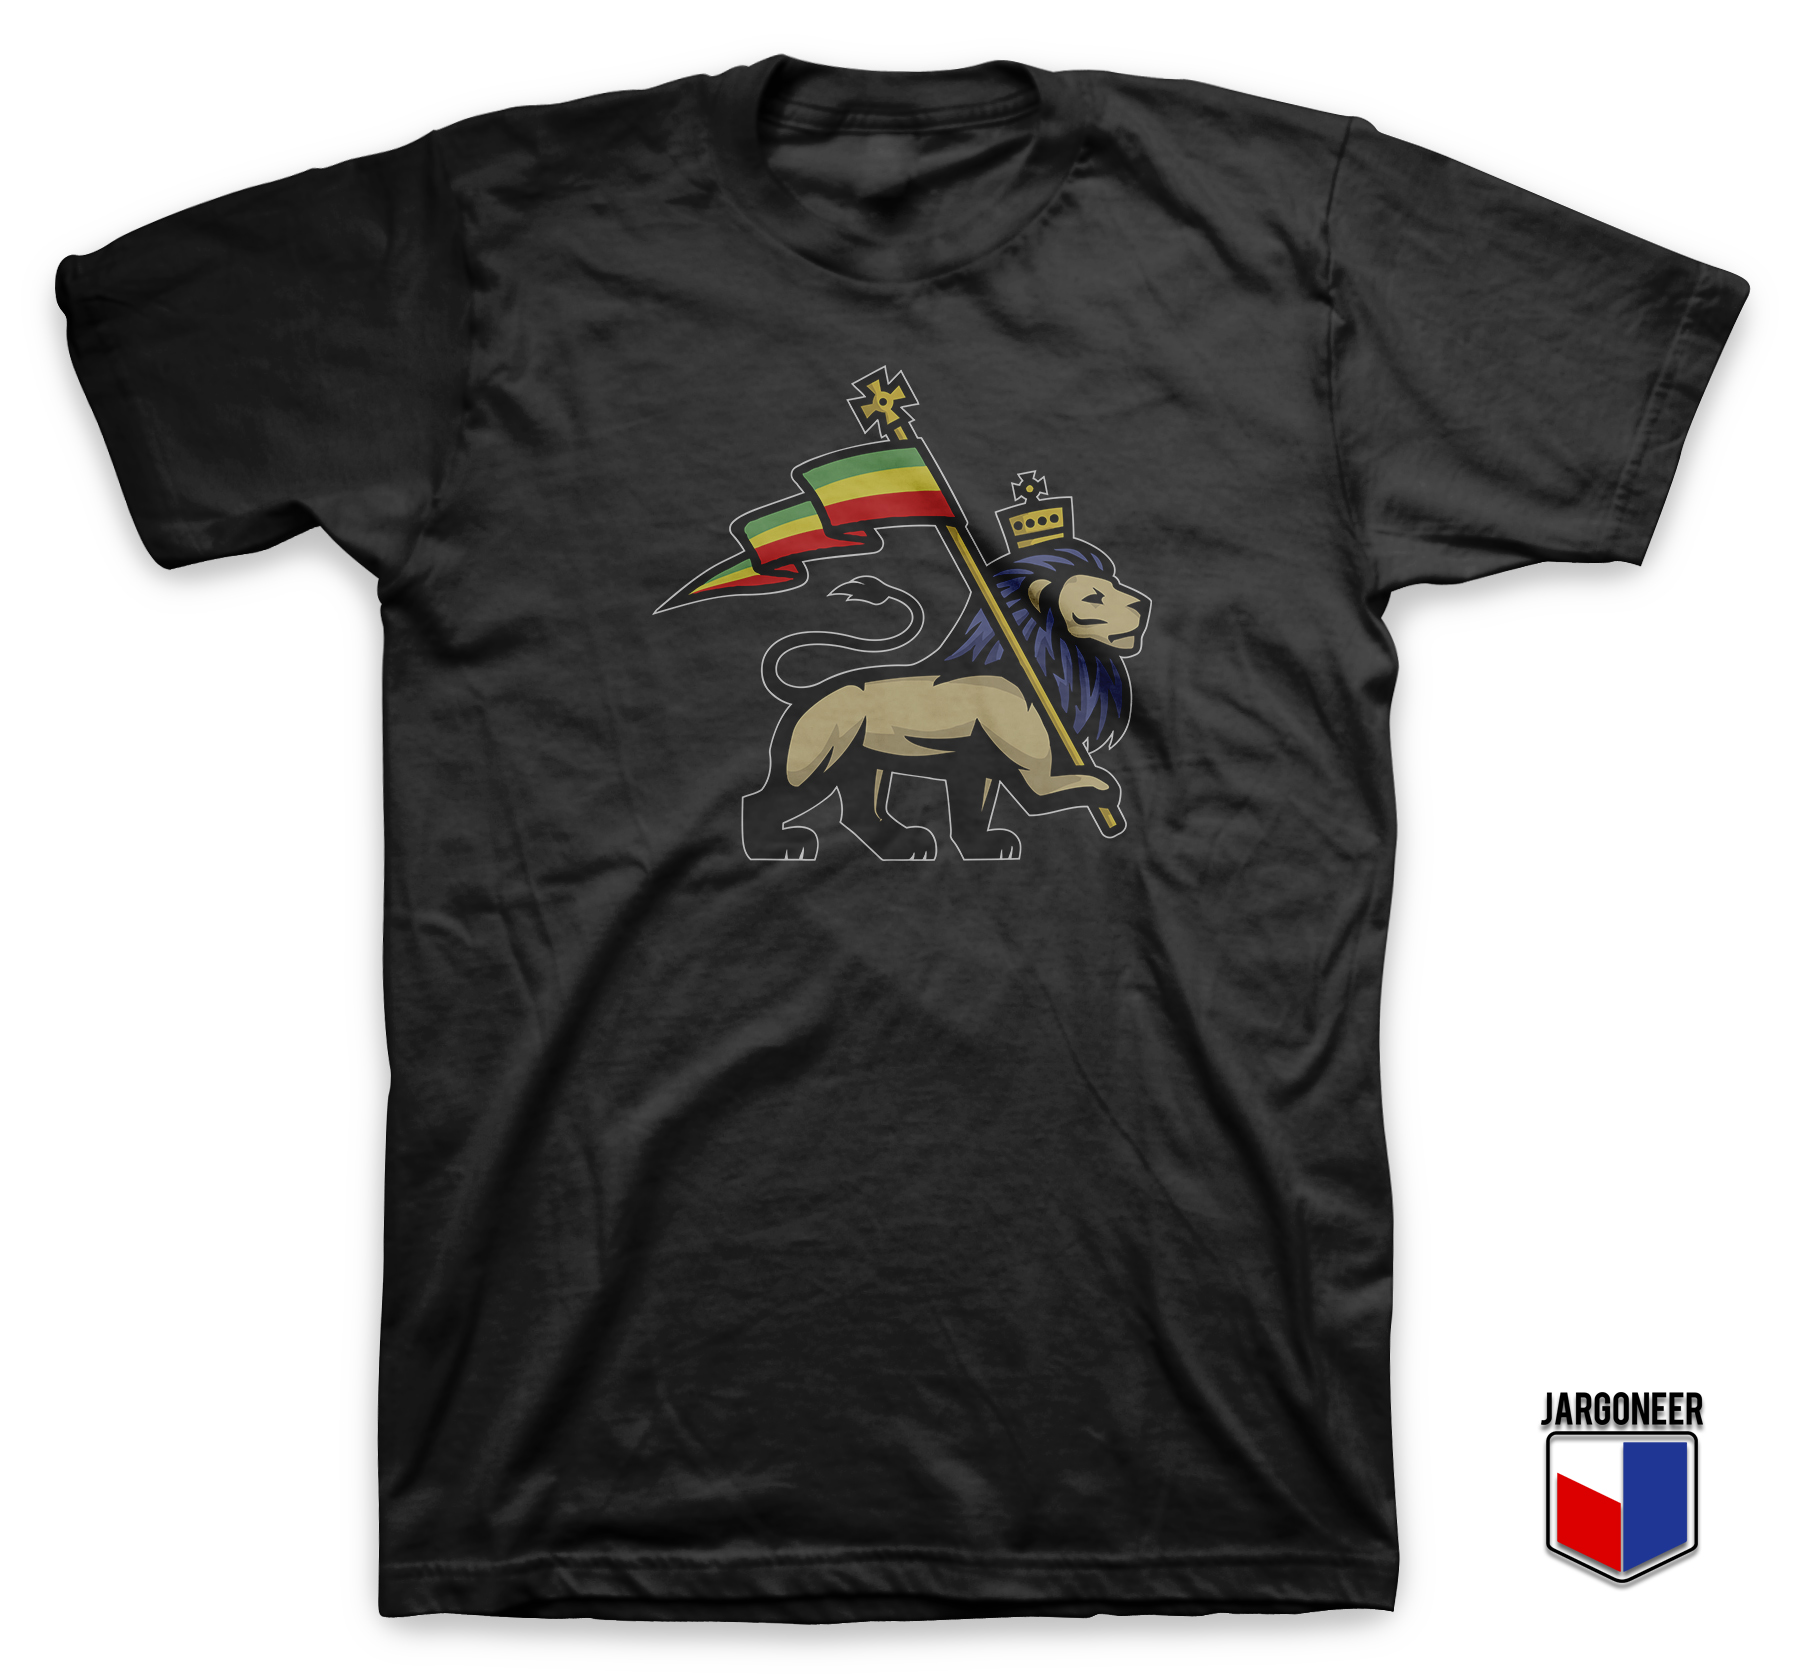 Rasta Lion of Judah T Shirt - Shop Unique Graphic Cool Shirt Designs